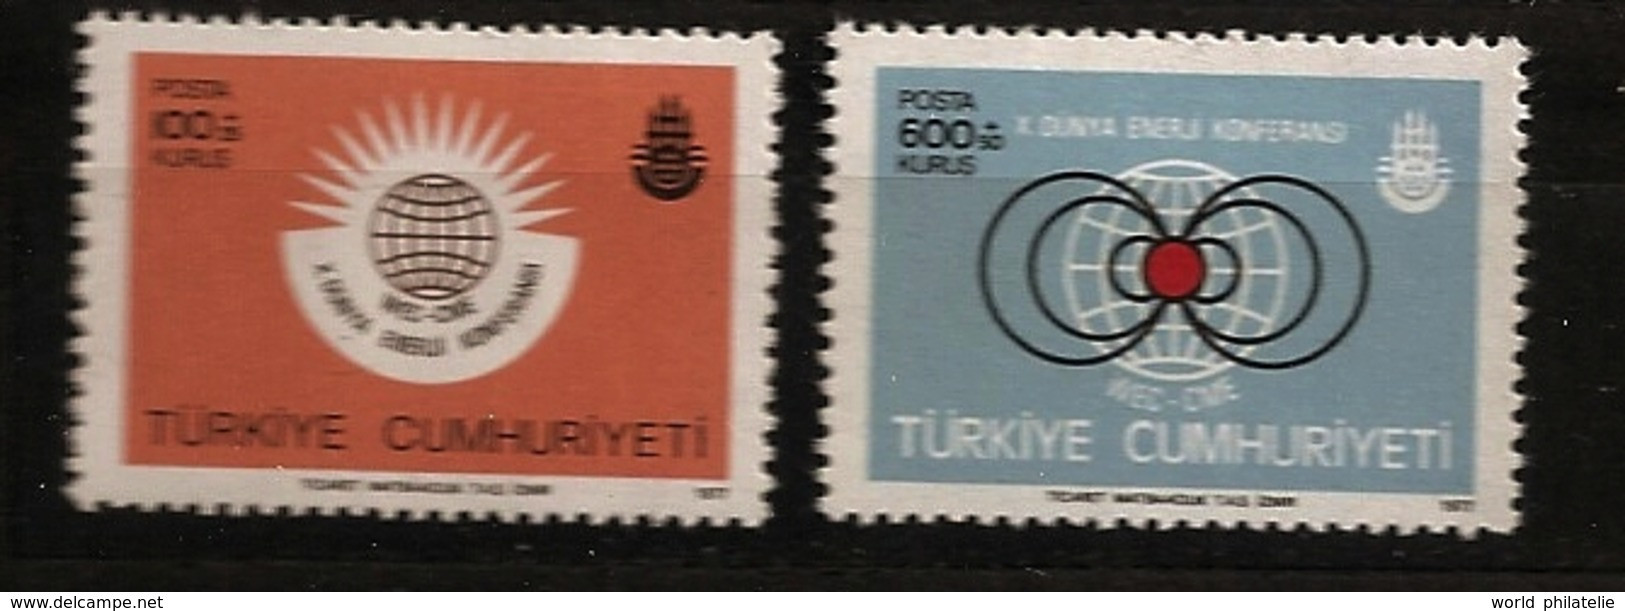 Turquie Türkiye 1977 N° 2198 / 9 ** Energie, Conférence Mondiale, Atome, Nucléaire, Gaz, Pétrole, Charbon, Electricité - Neufs